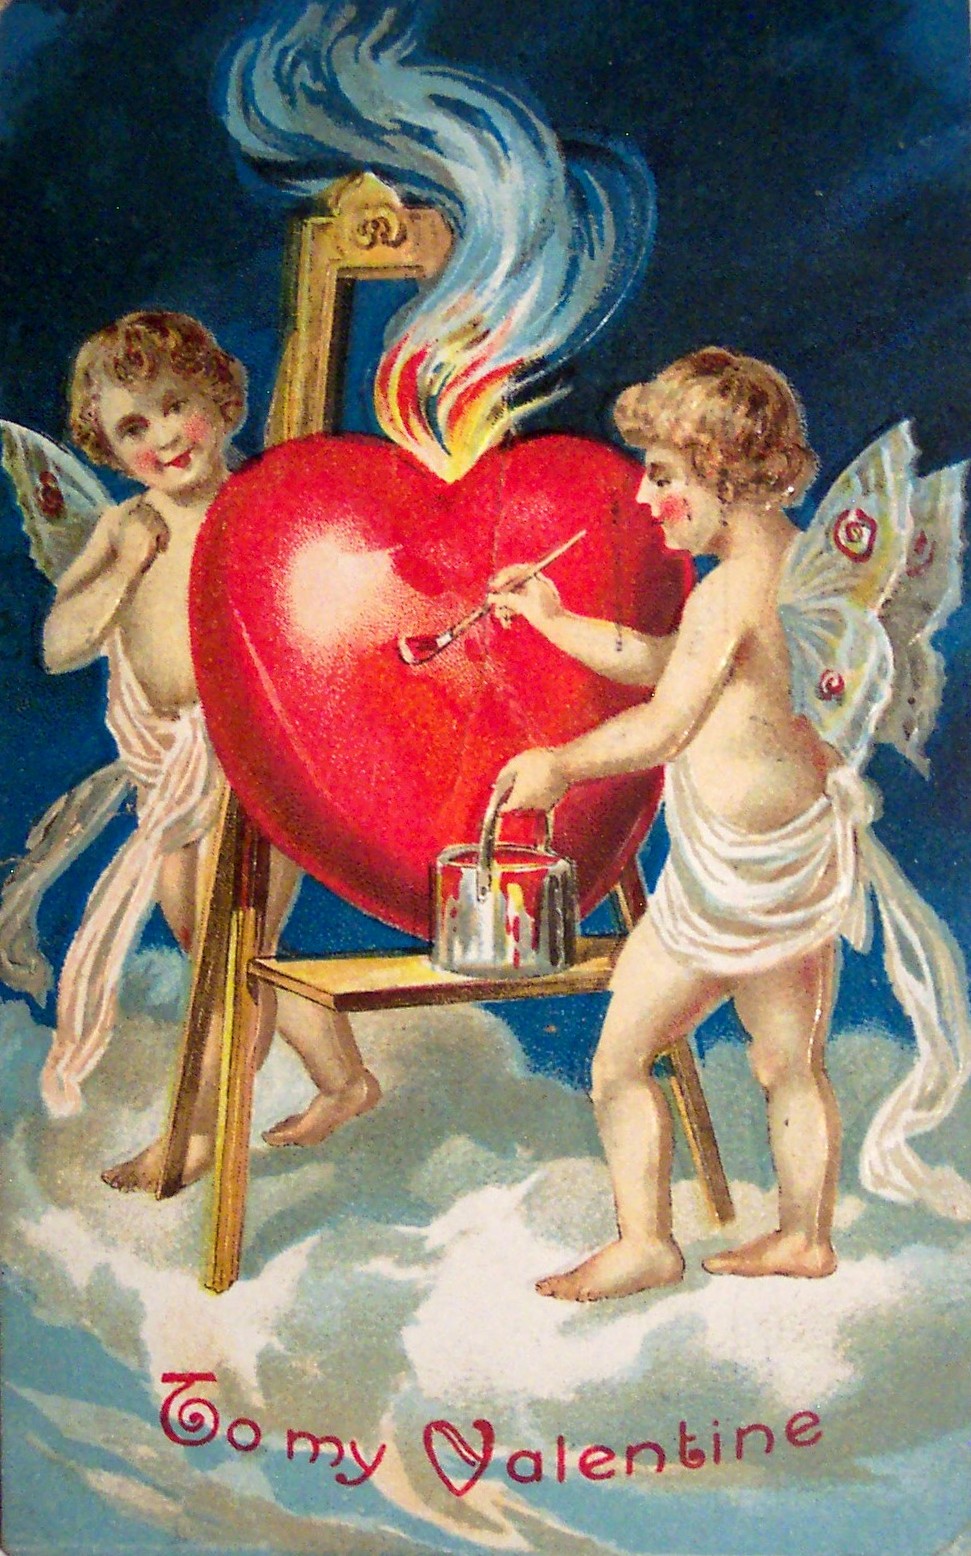 Sevgililer günü kartı, 1909 civarı.